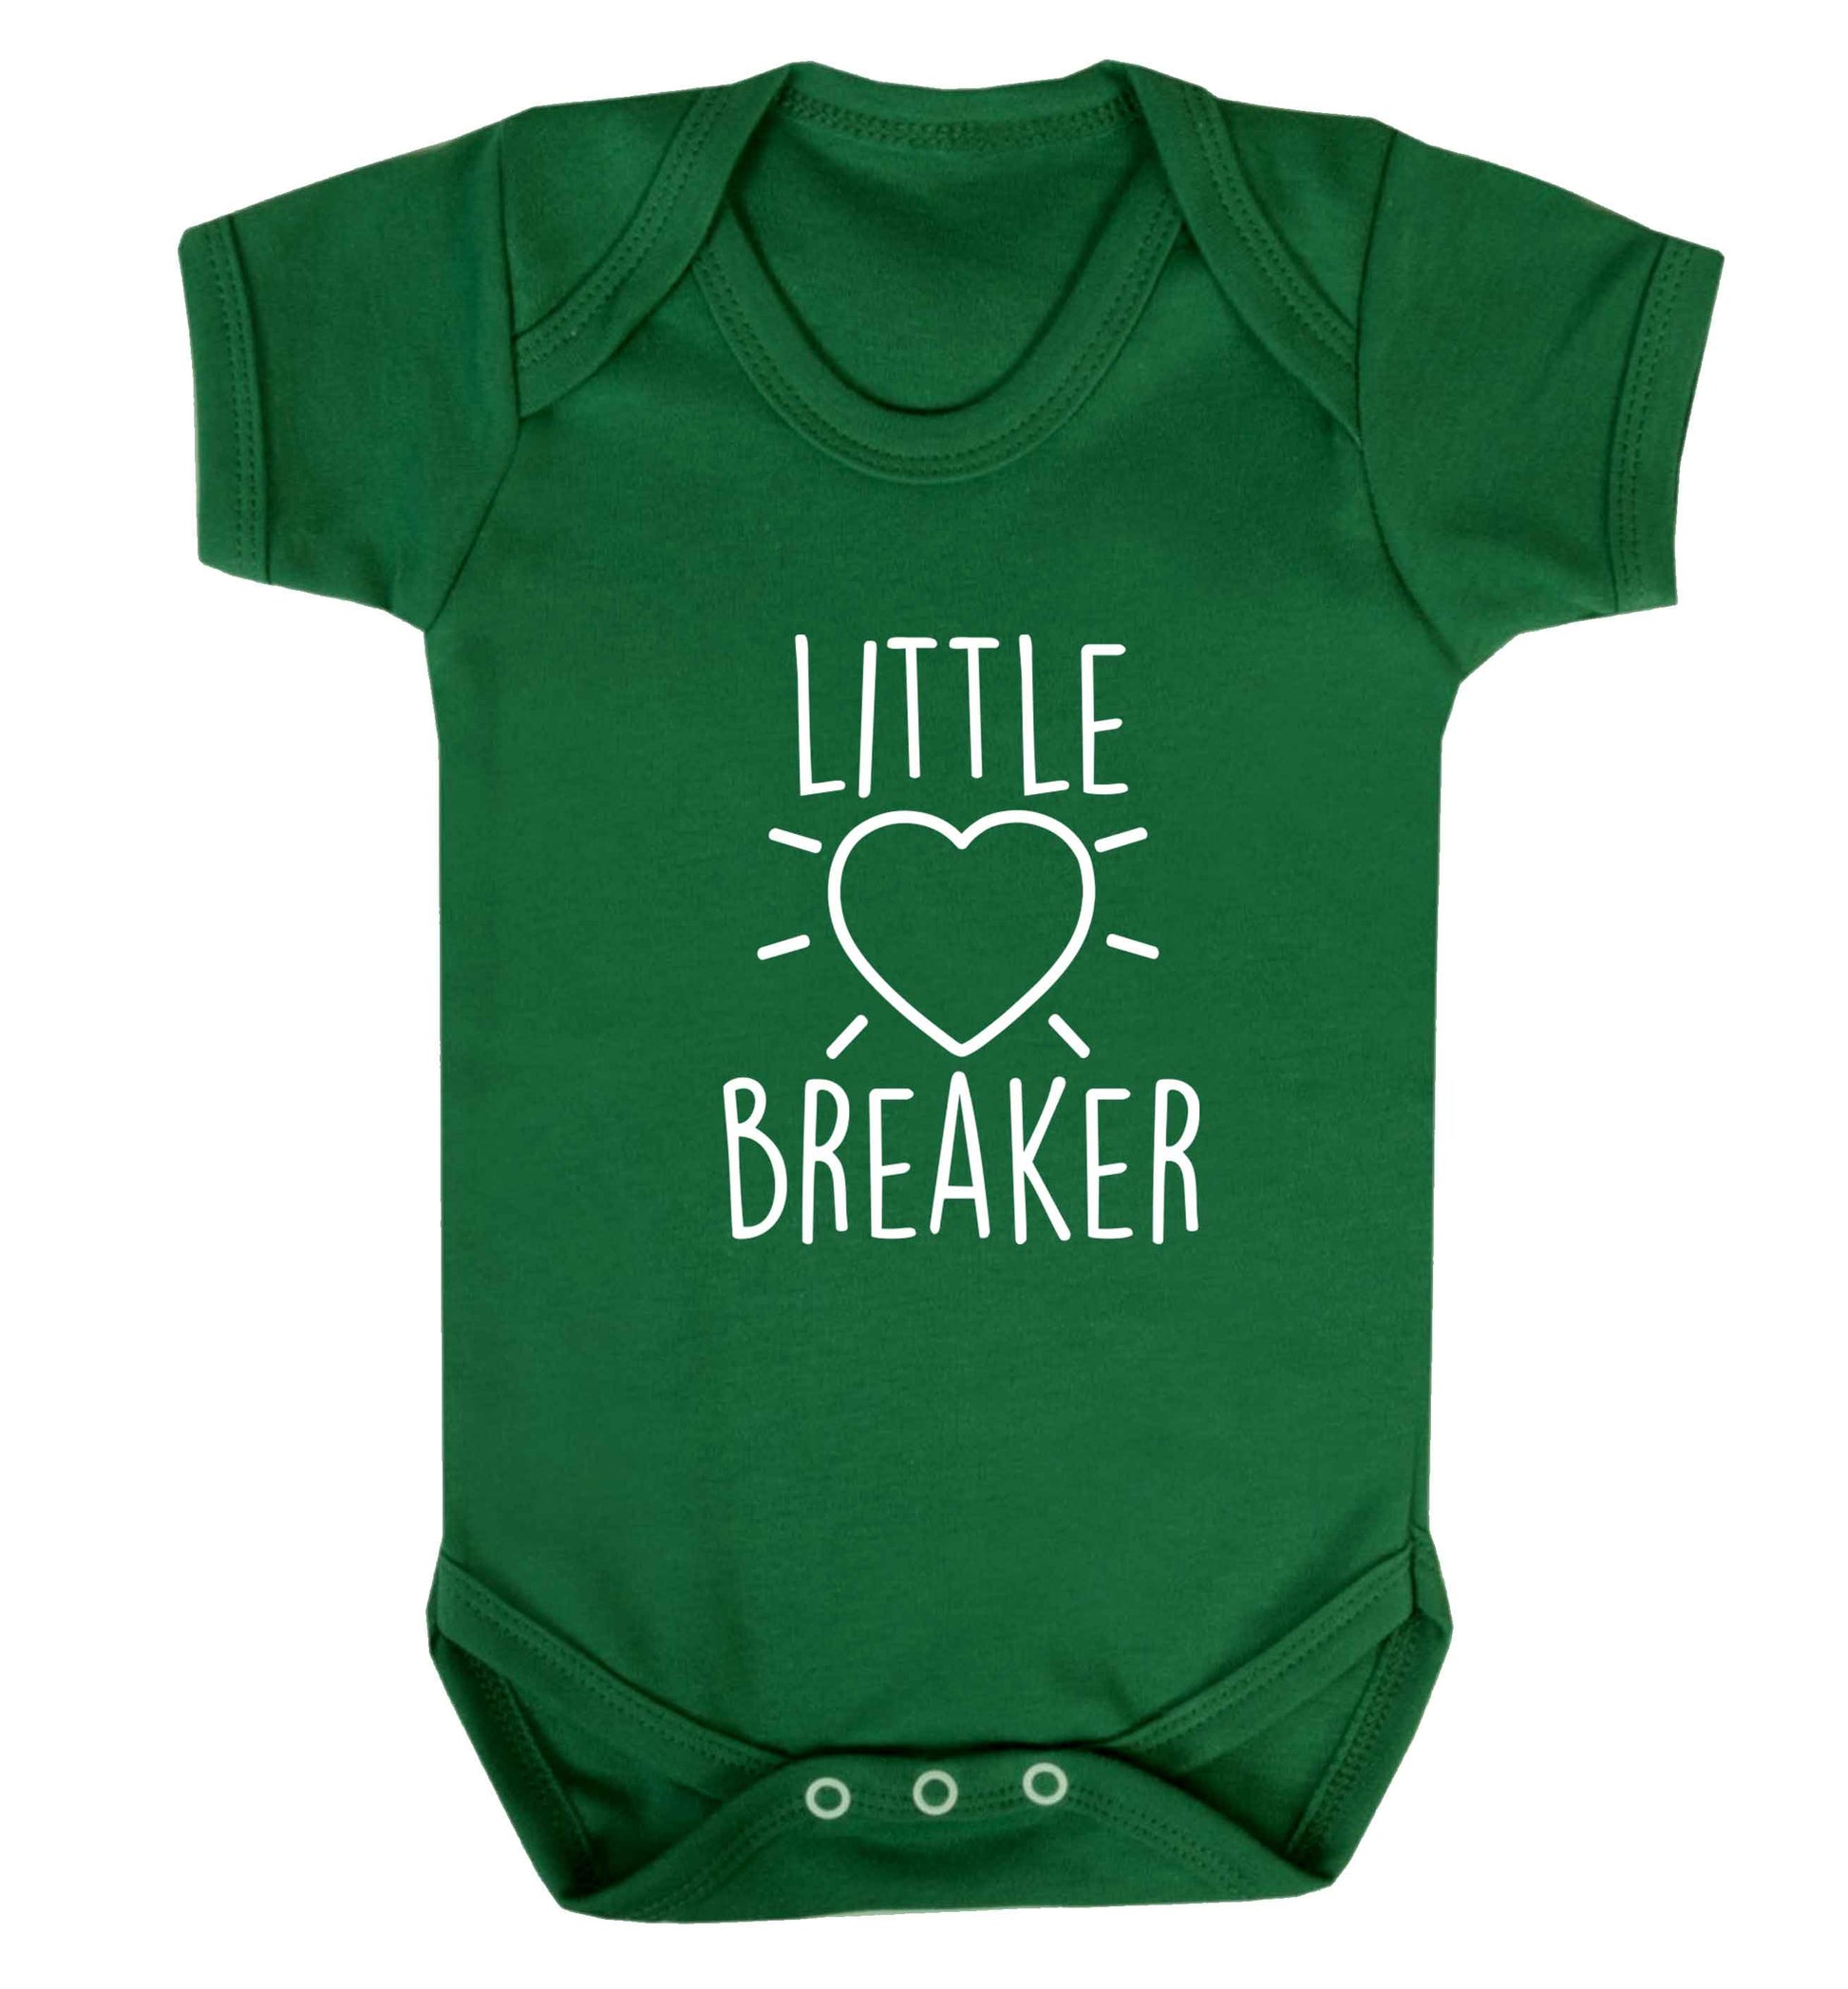 Little heartbreaker baby vest green 18-24 months